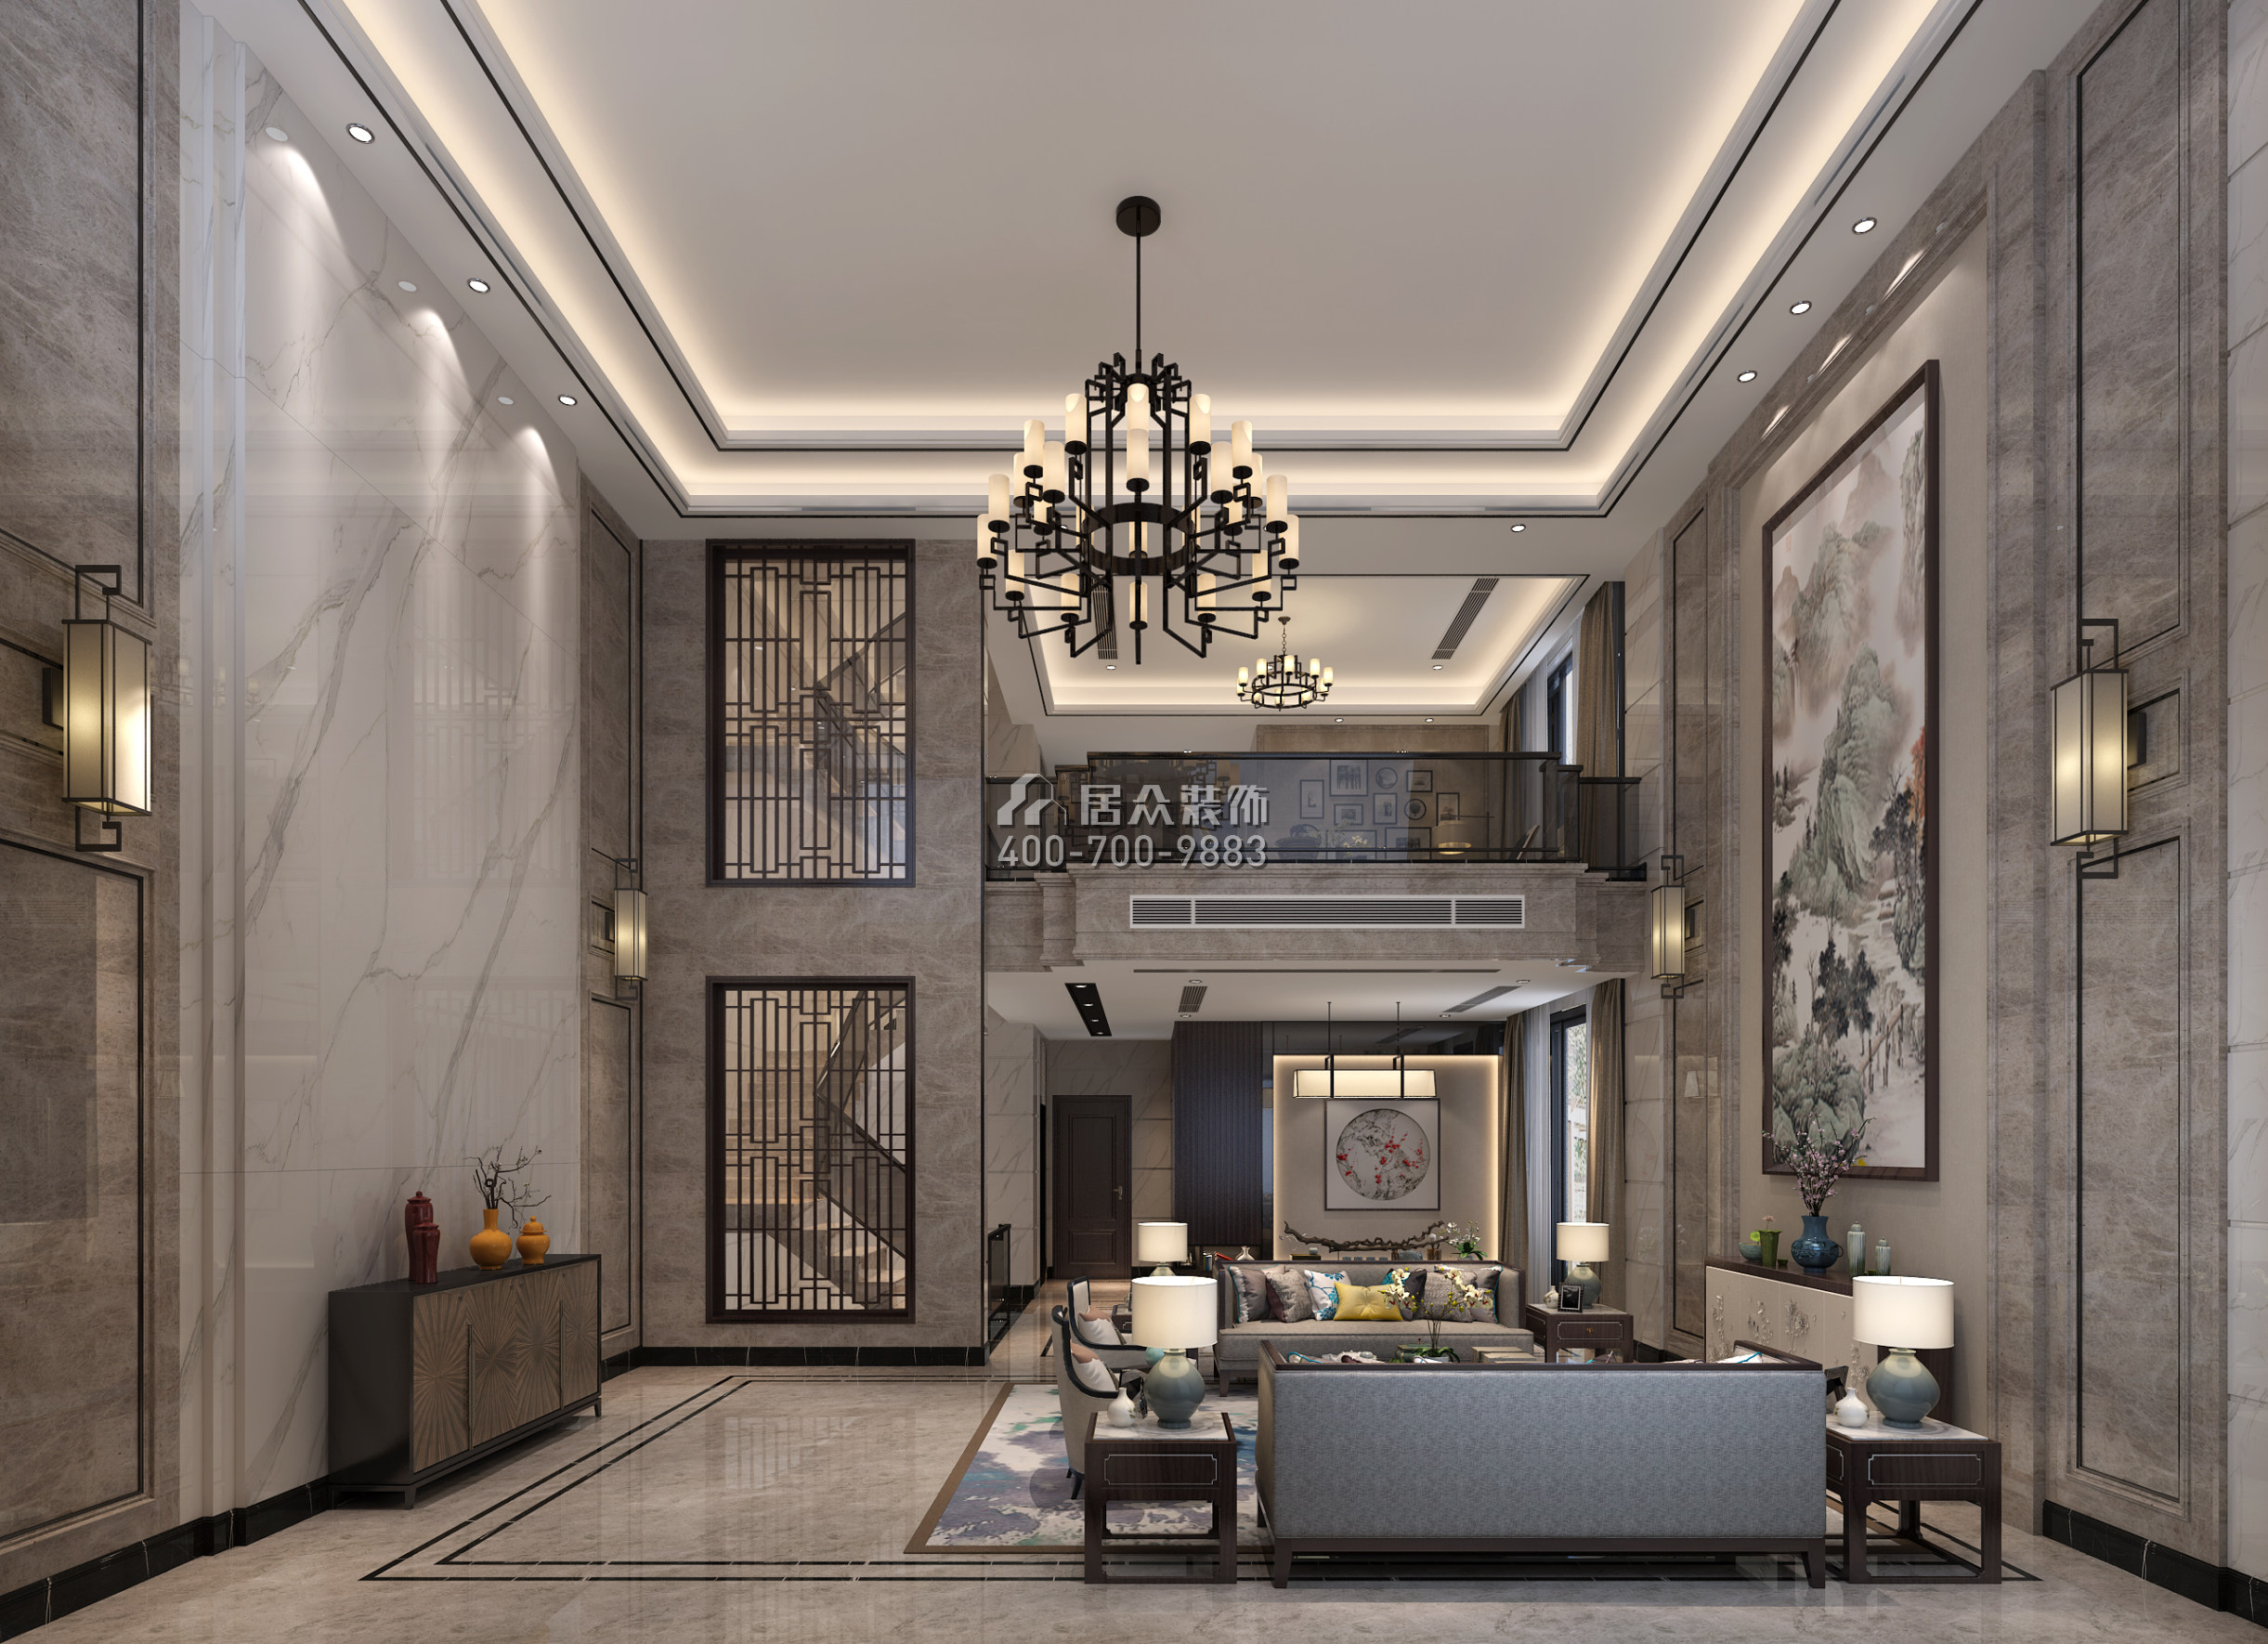 华侨城天鹅湖650平方米中式风格别墅户型客厅装修效果图